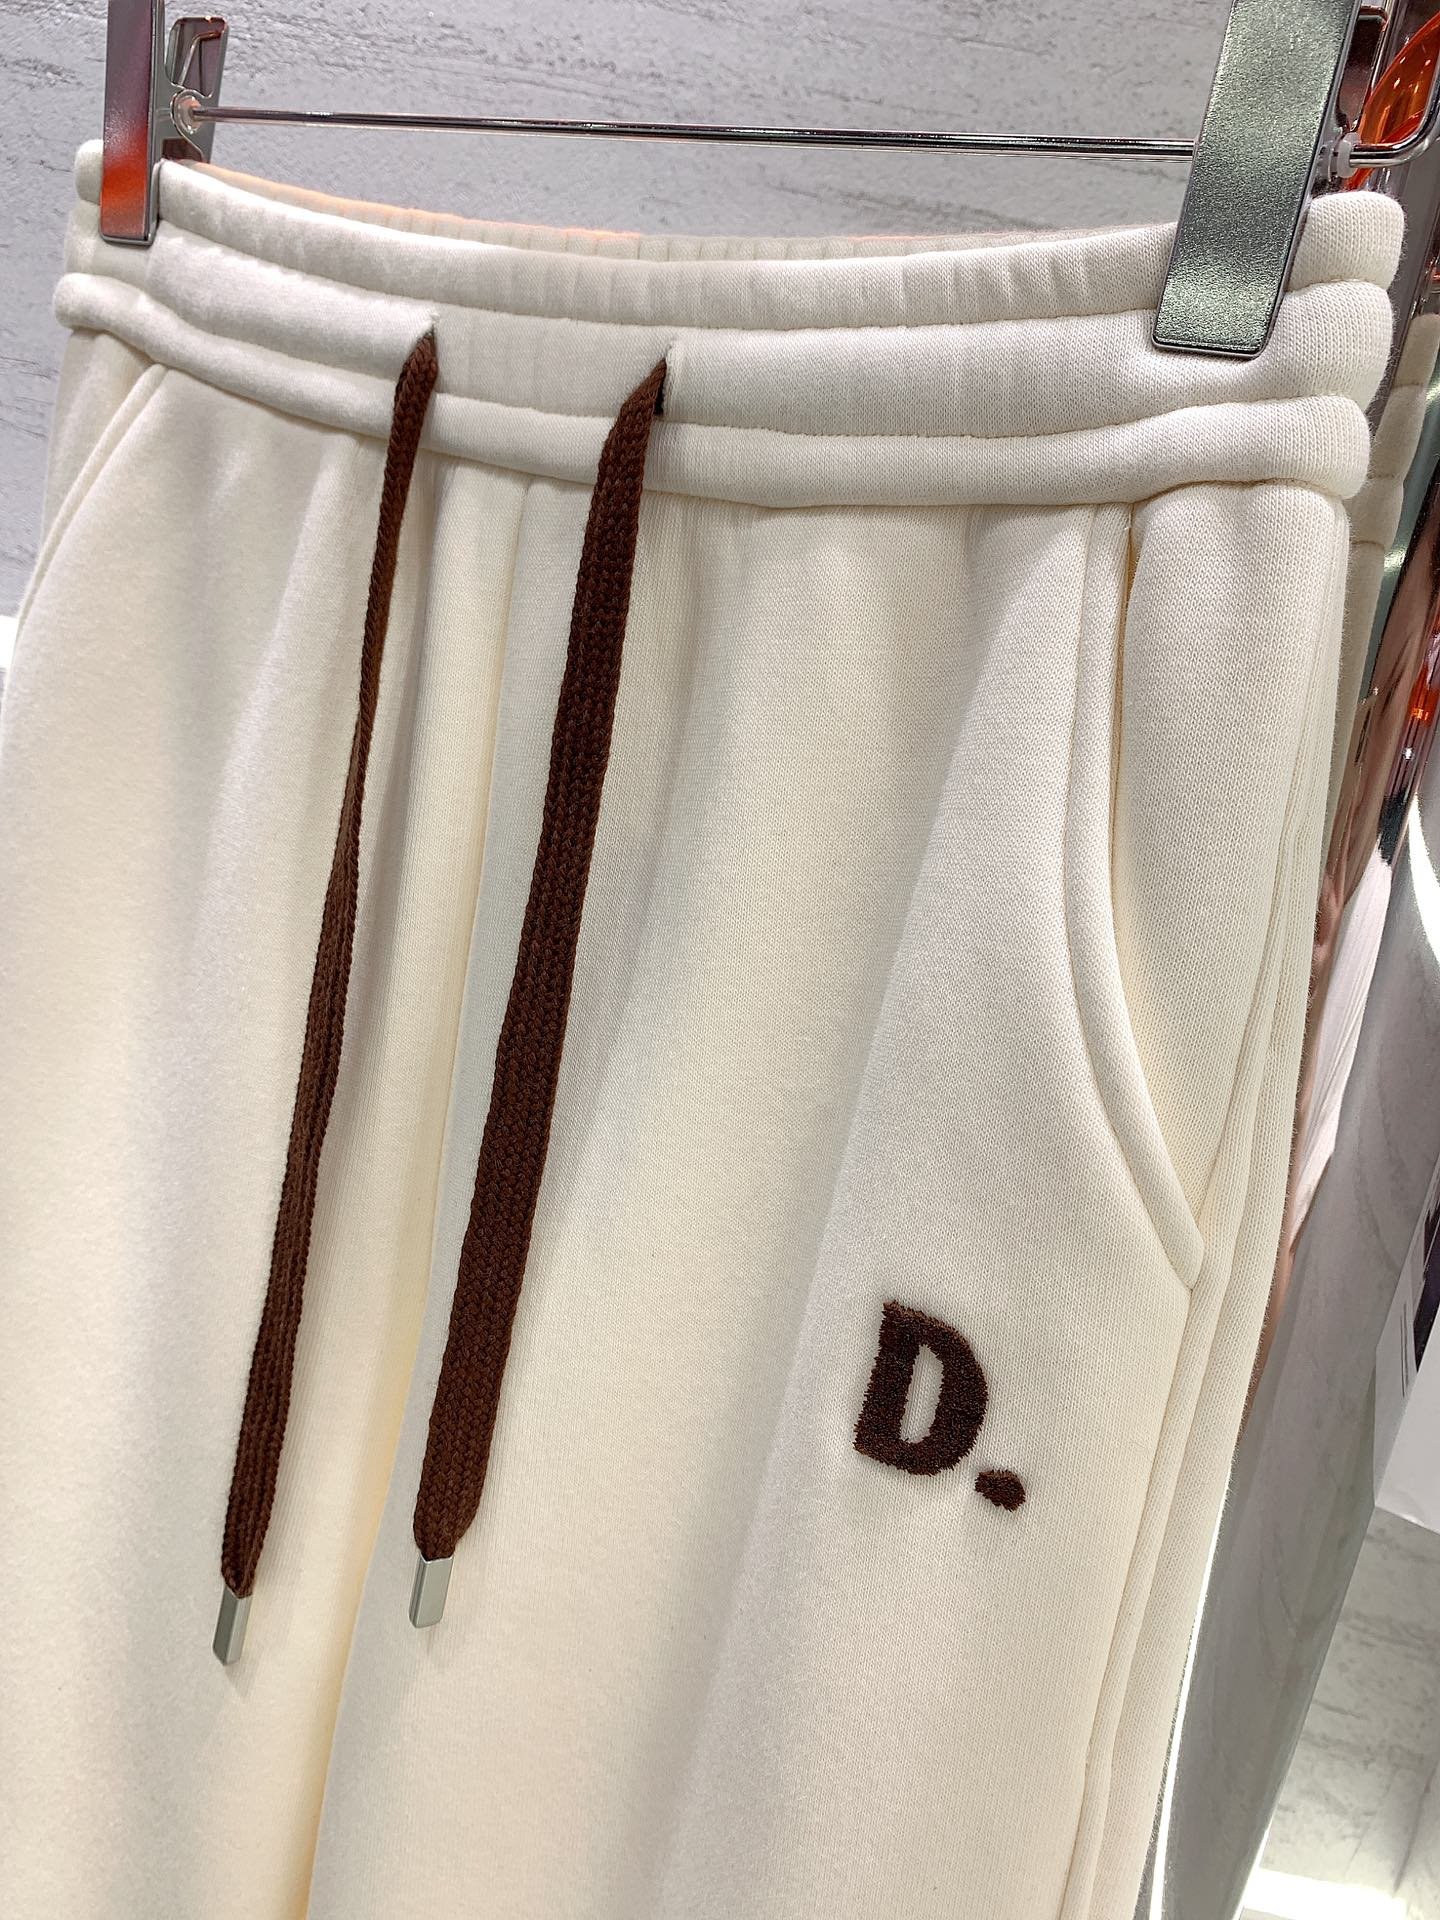 QINGOUYANG-新款牙刷绣字母加绒束脚卫裤绑在字母都做了撞色设计面料质感超好非常厚实保暖版型超正休